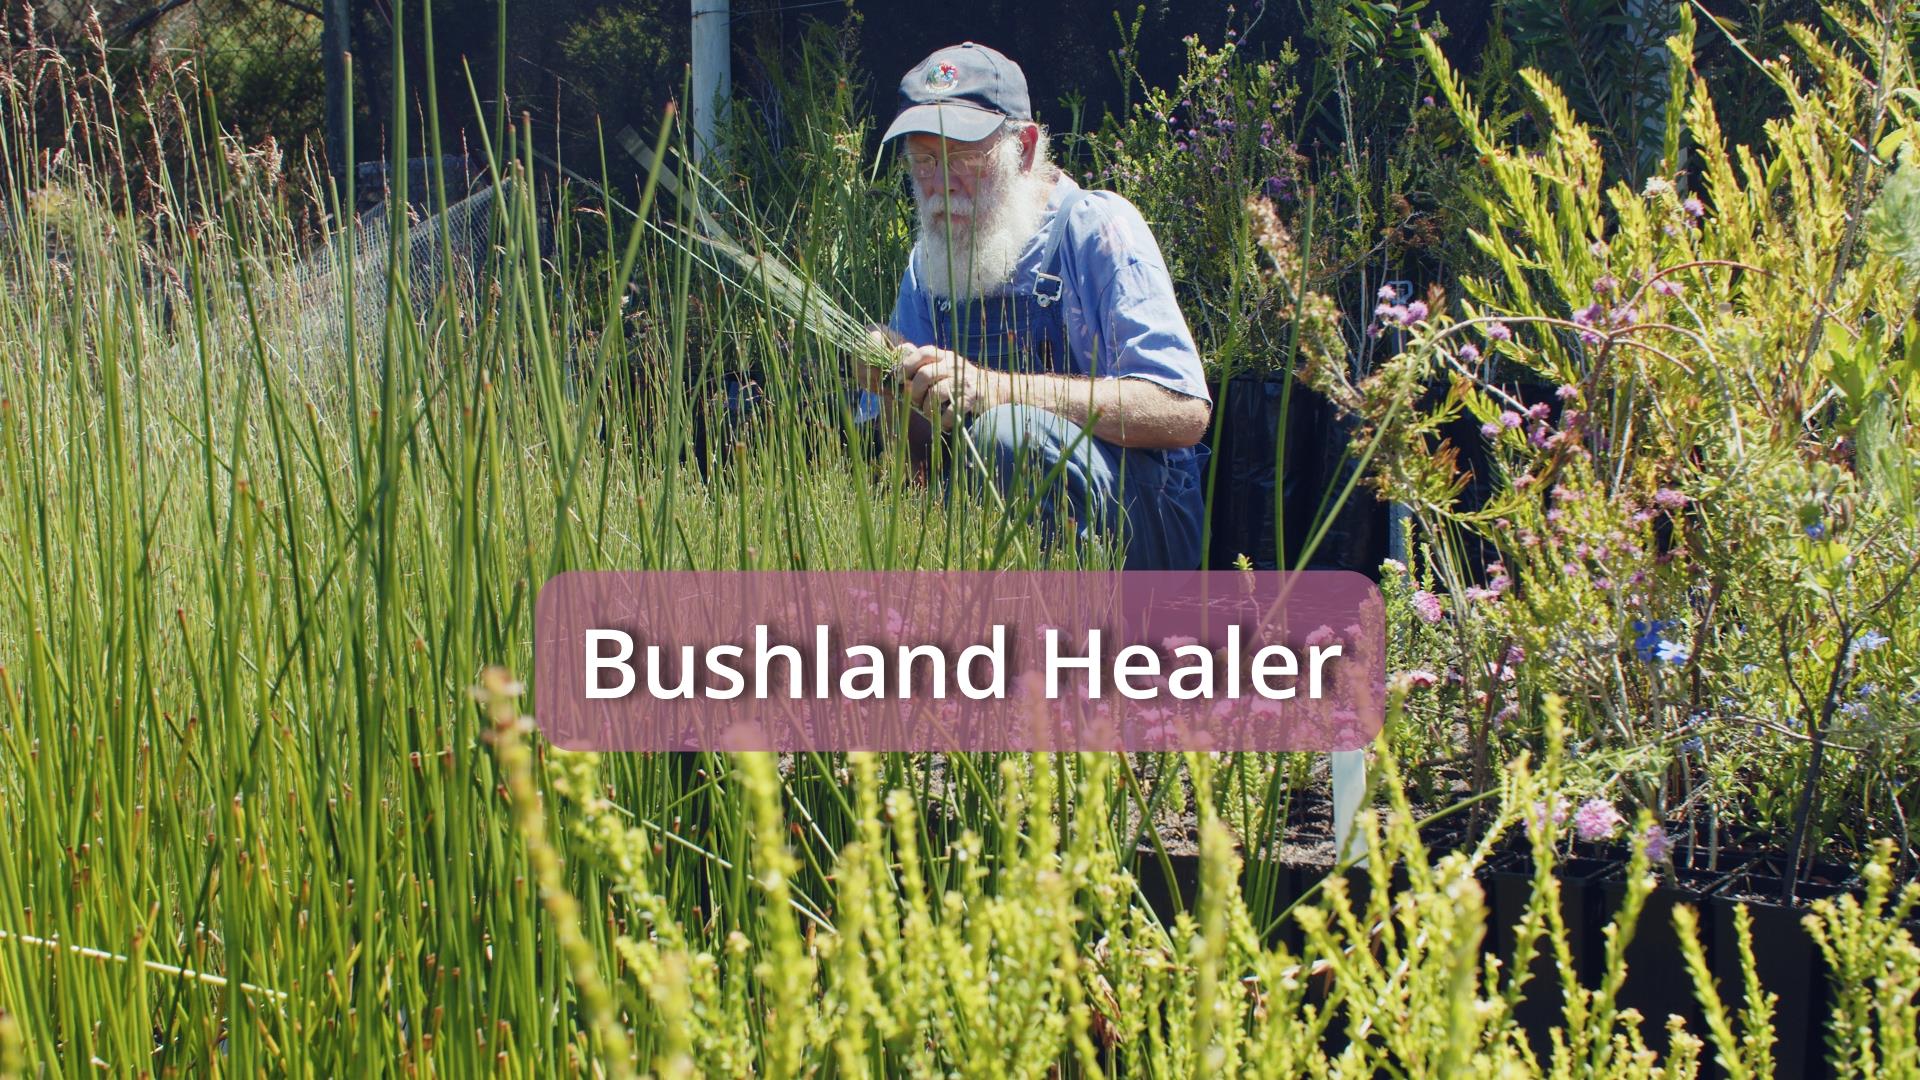 Bushland Healer Film Celebrates Dedication